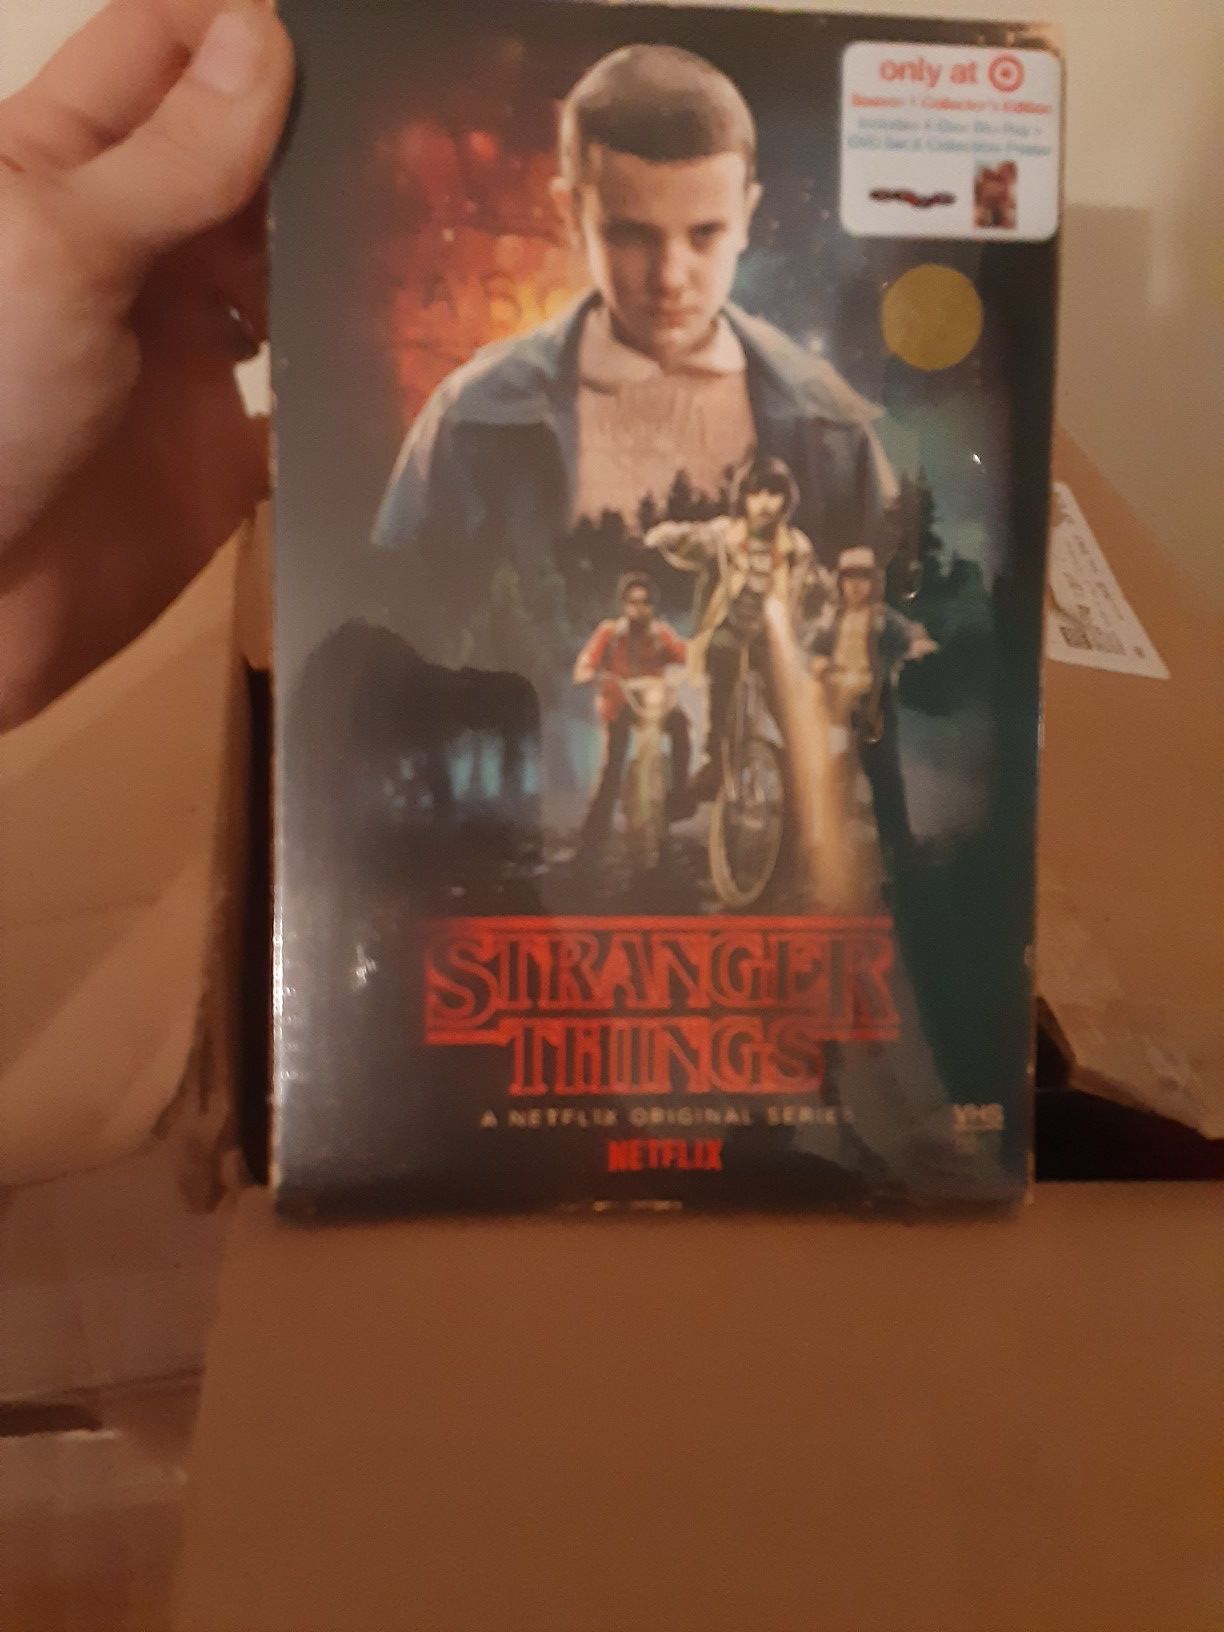 Stranger things series dvds